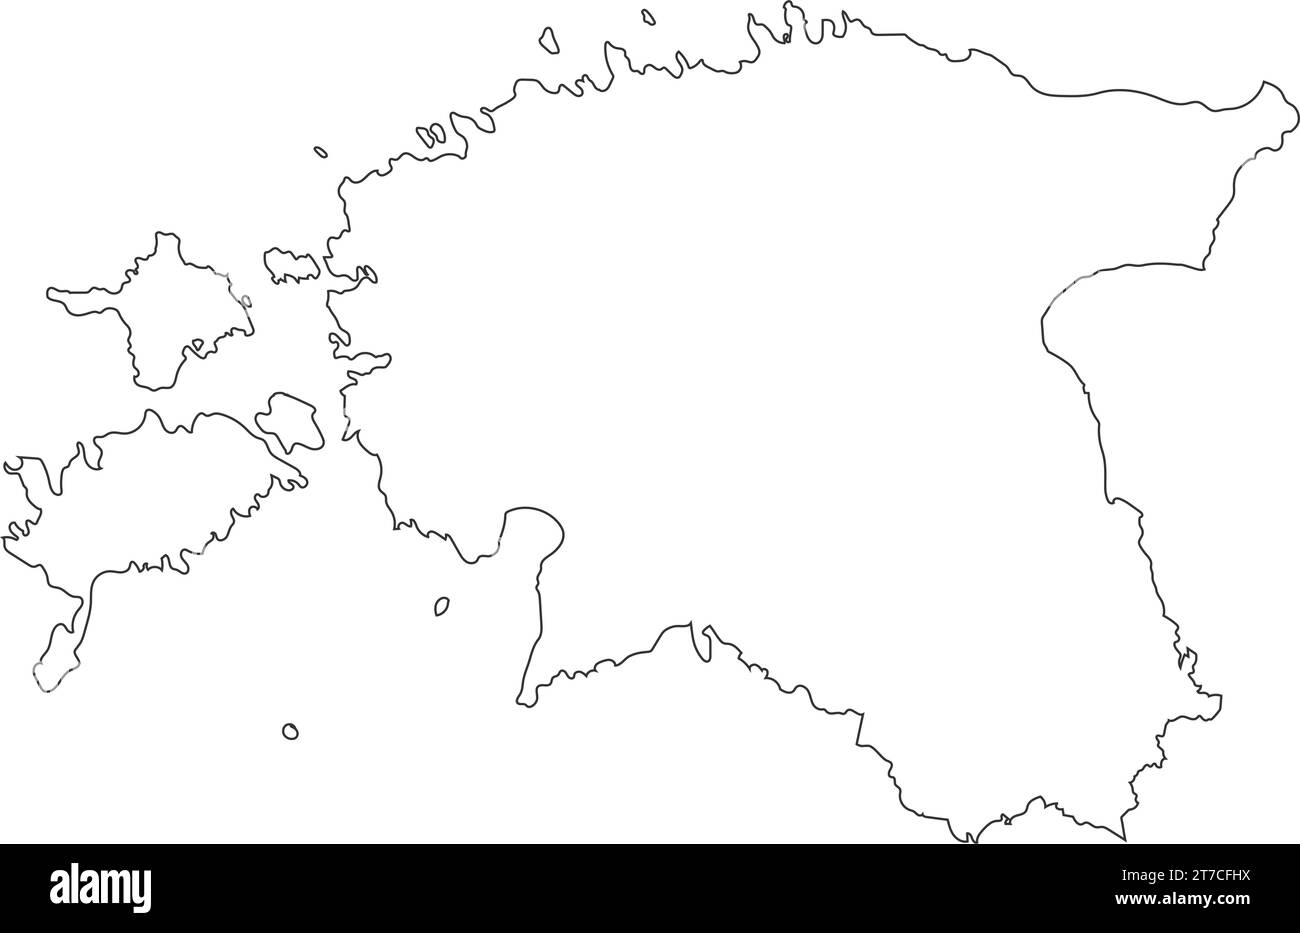 Estonia map icon vector illustration design Stock Vector